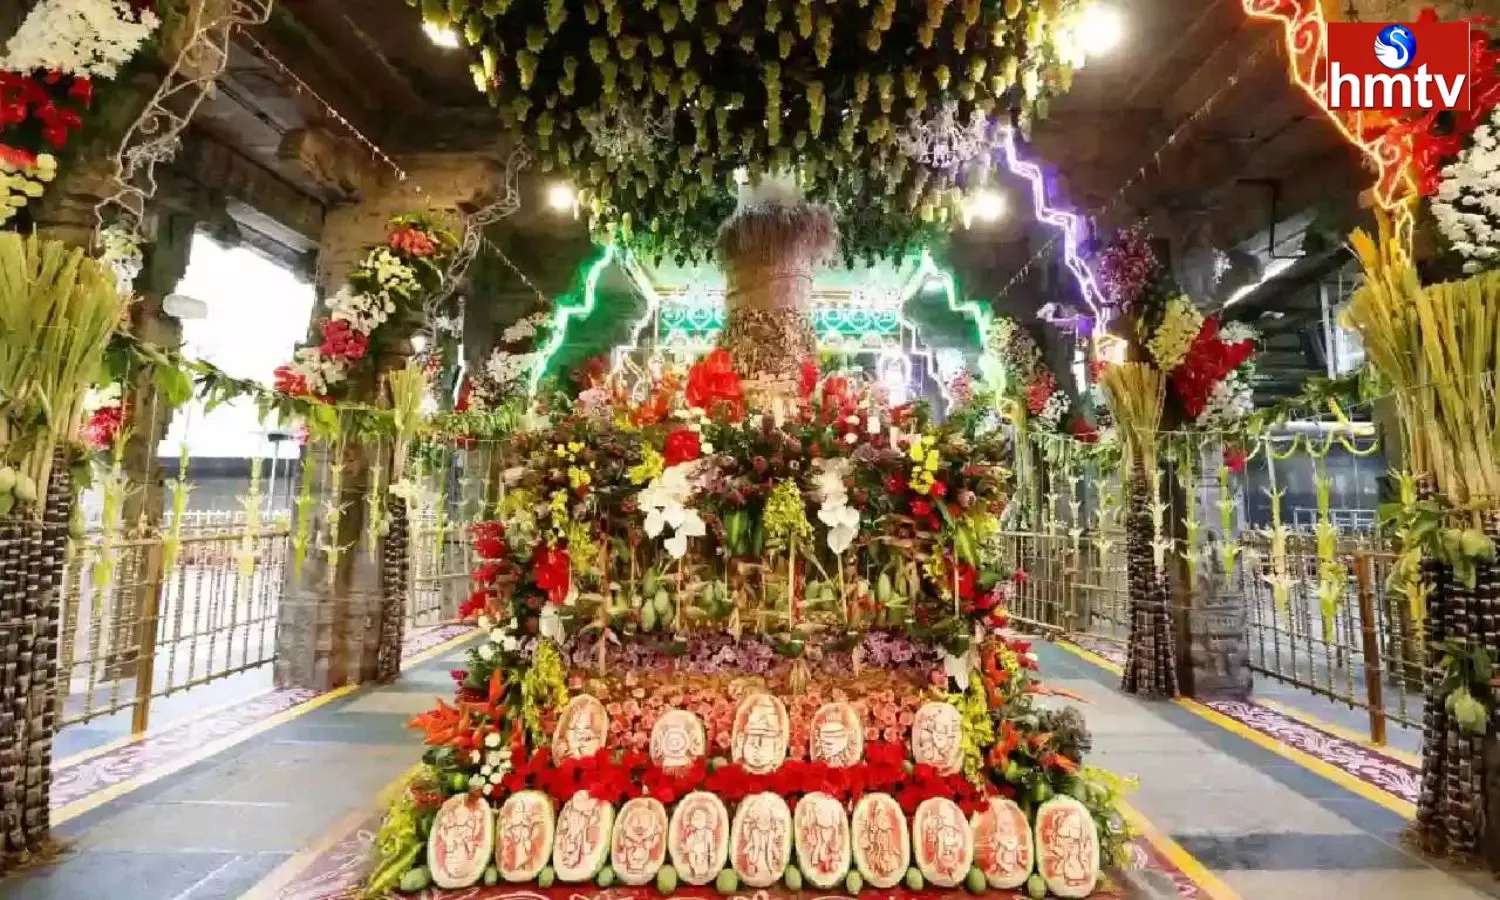 Grand Ugadi Celebrations In The Presence Of Tirumala Venkanna